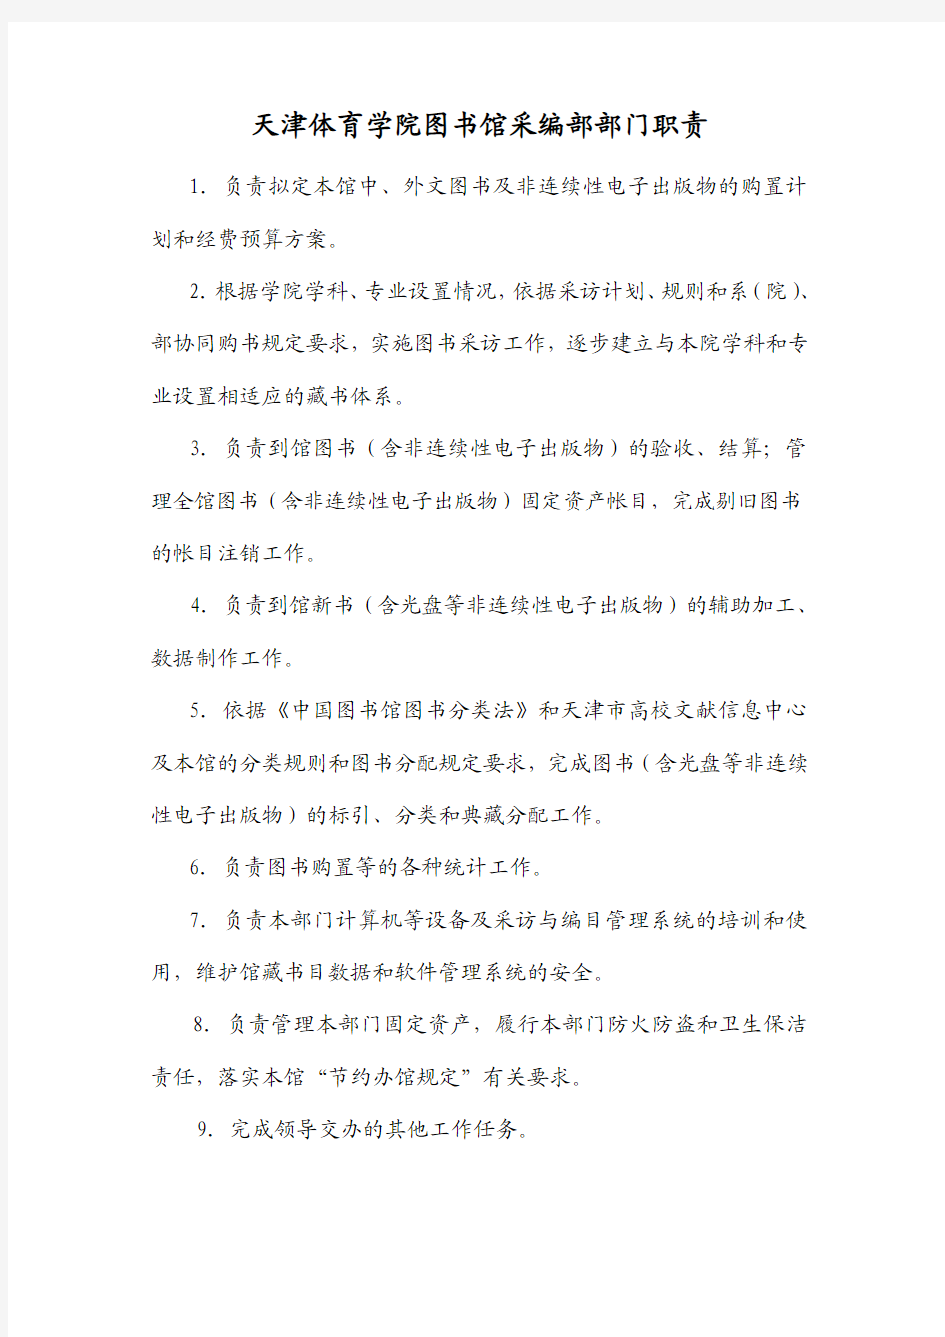 5、天津体育学院图书馆采编部部门职责